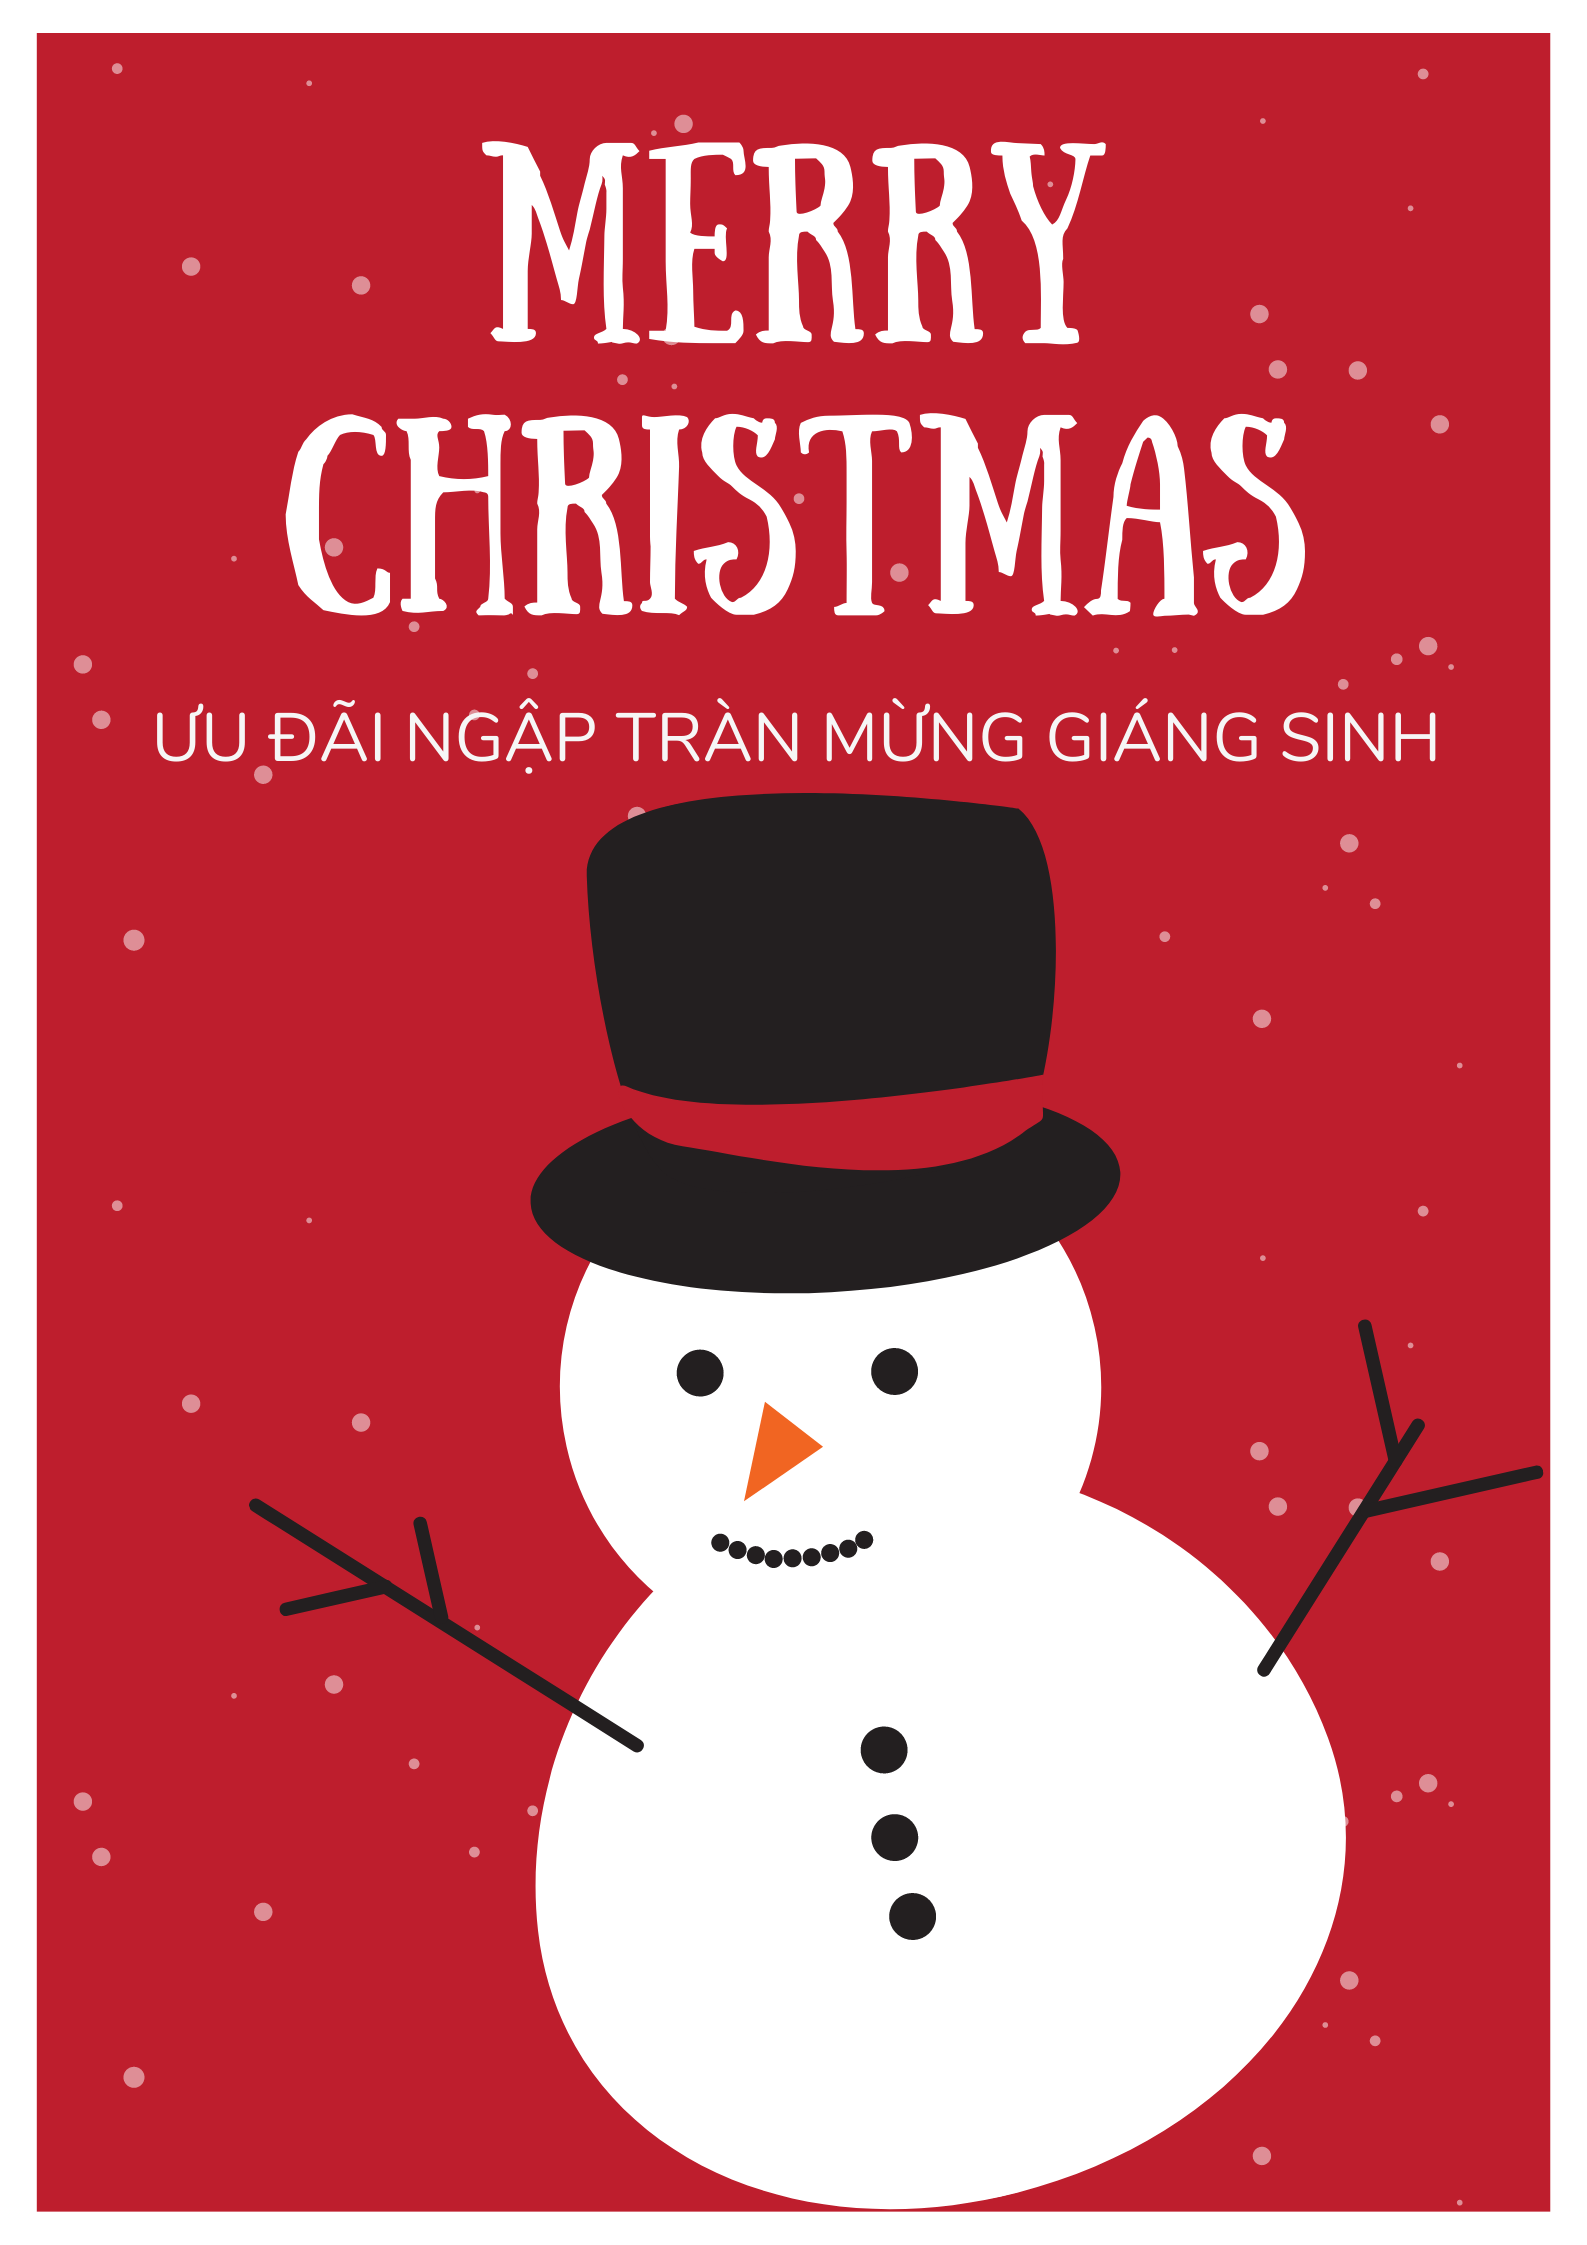 Top 25 mẫu poster Giáng sinh đẹp mắt cho mùa lễ năm 2021 - Ảnh 14.